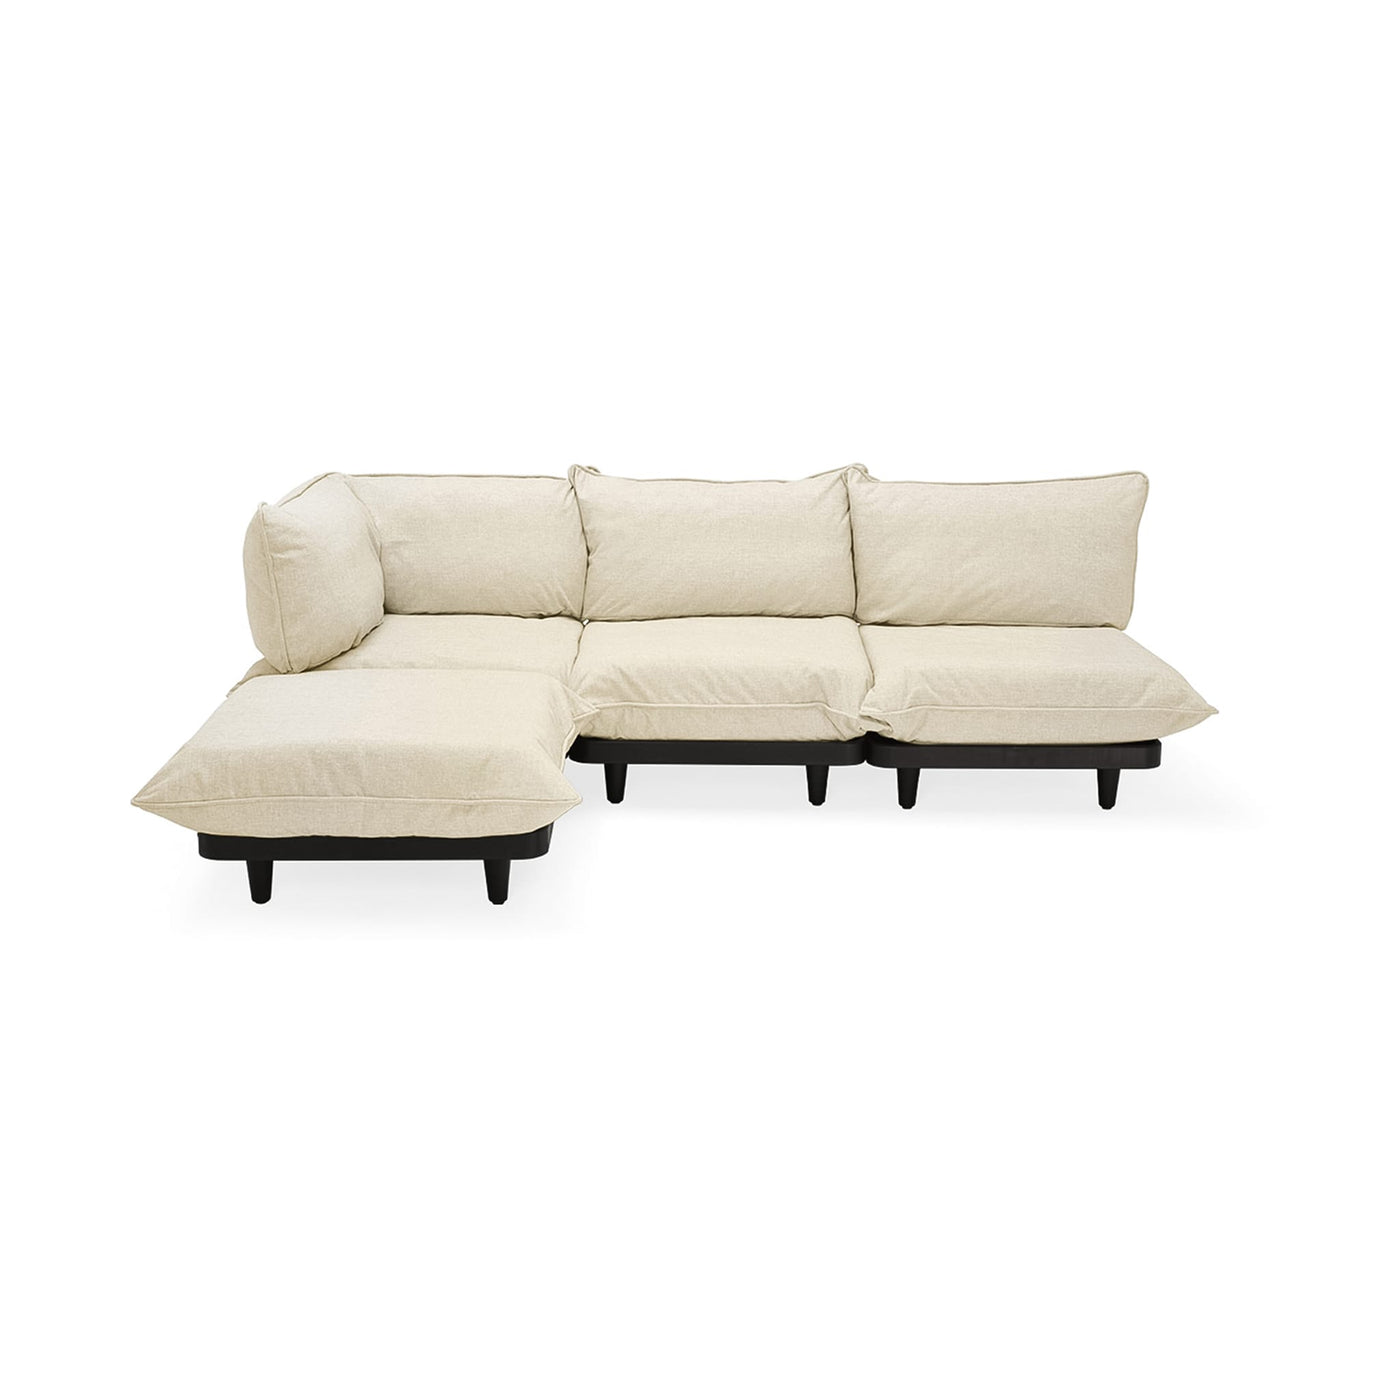 Découvrez le sofa sectionnel Paletti de Fatboy, robuste et flexible pour vos besoins en extérieur. Sahara